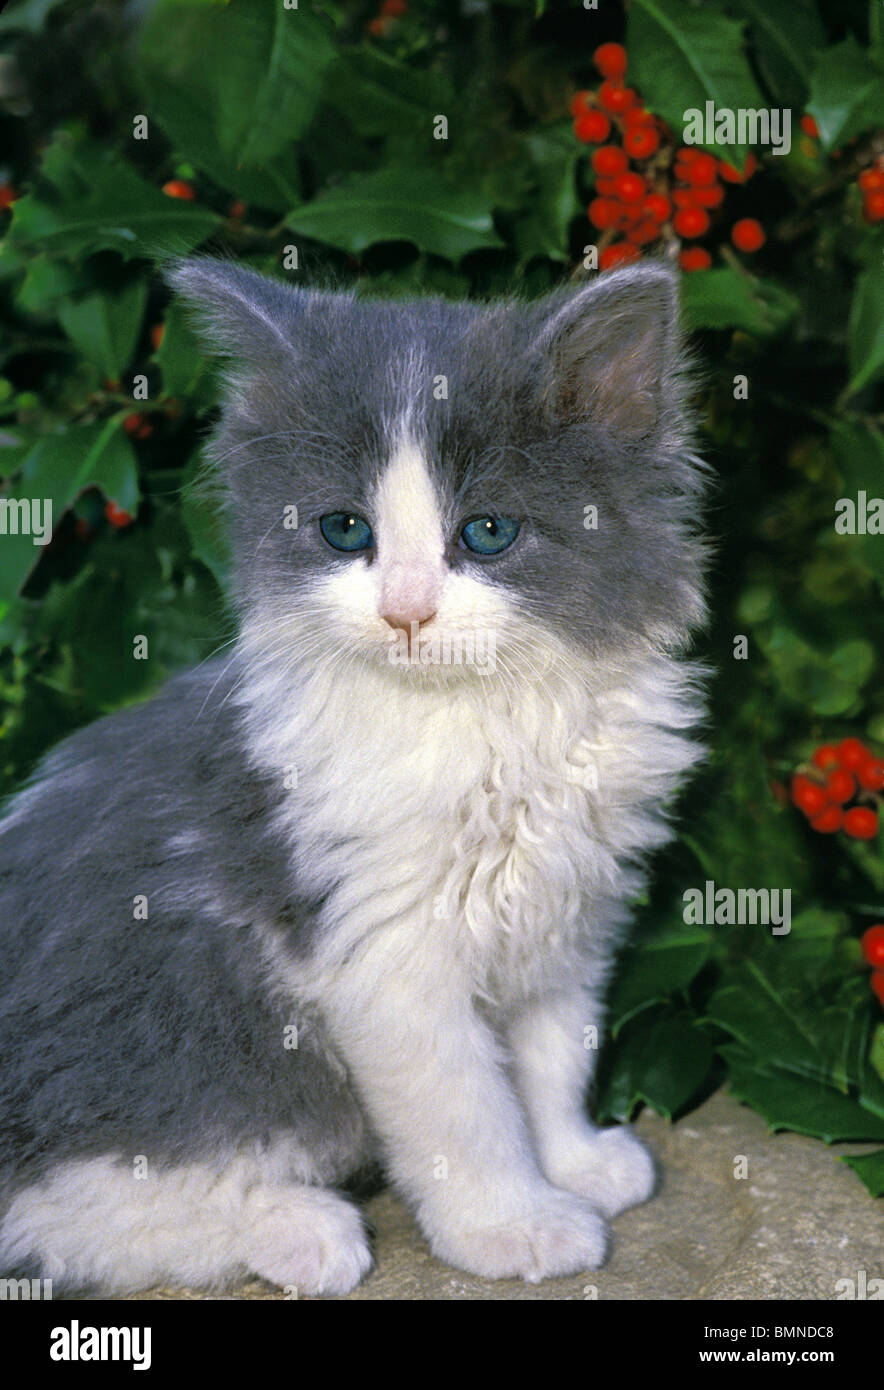 Carino il grigio e il bianco gattino con gli occhi blu seduto su una roccia nel giardino vicino a holly bush Foto Stock